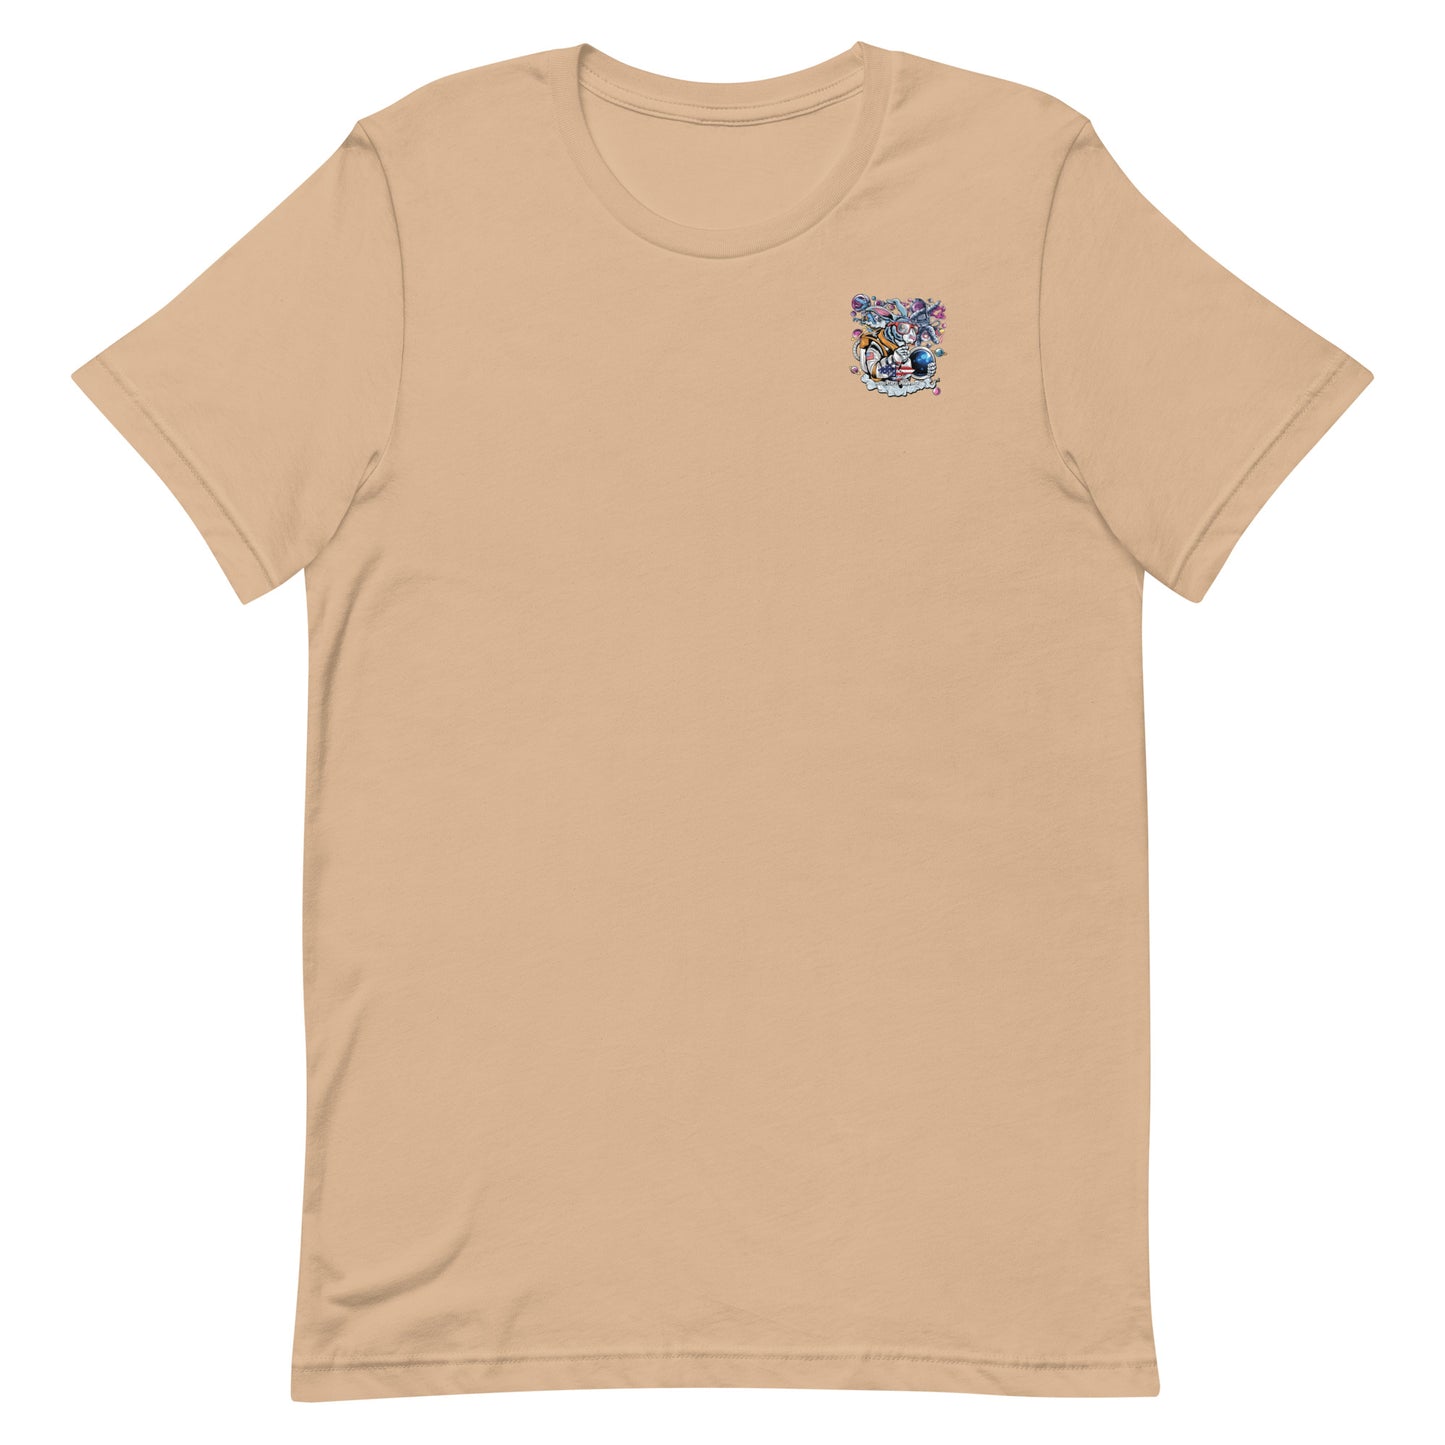 Space Rabbit Unisex T Shirt